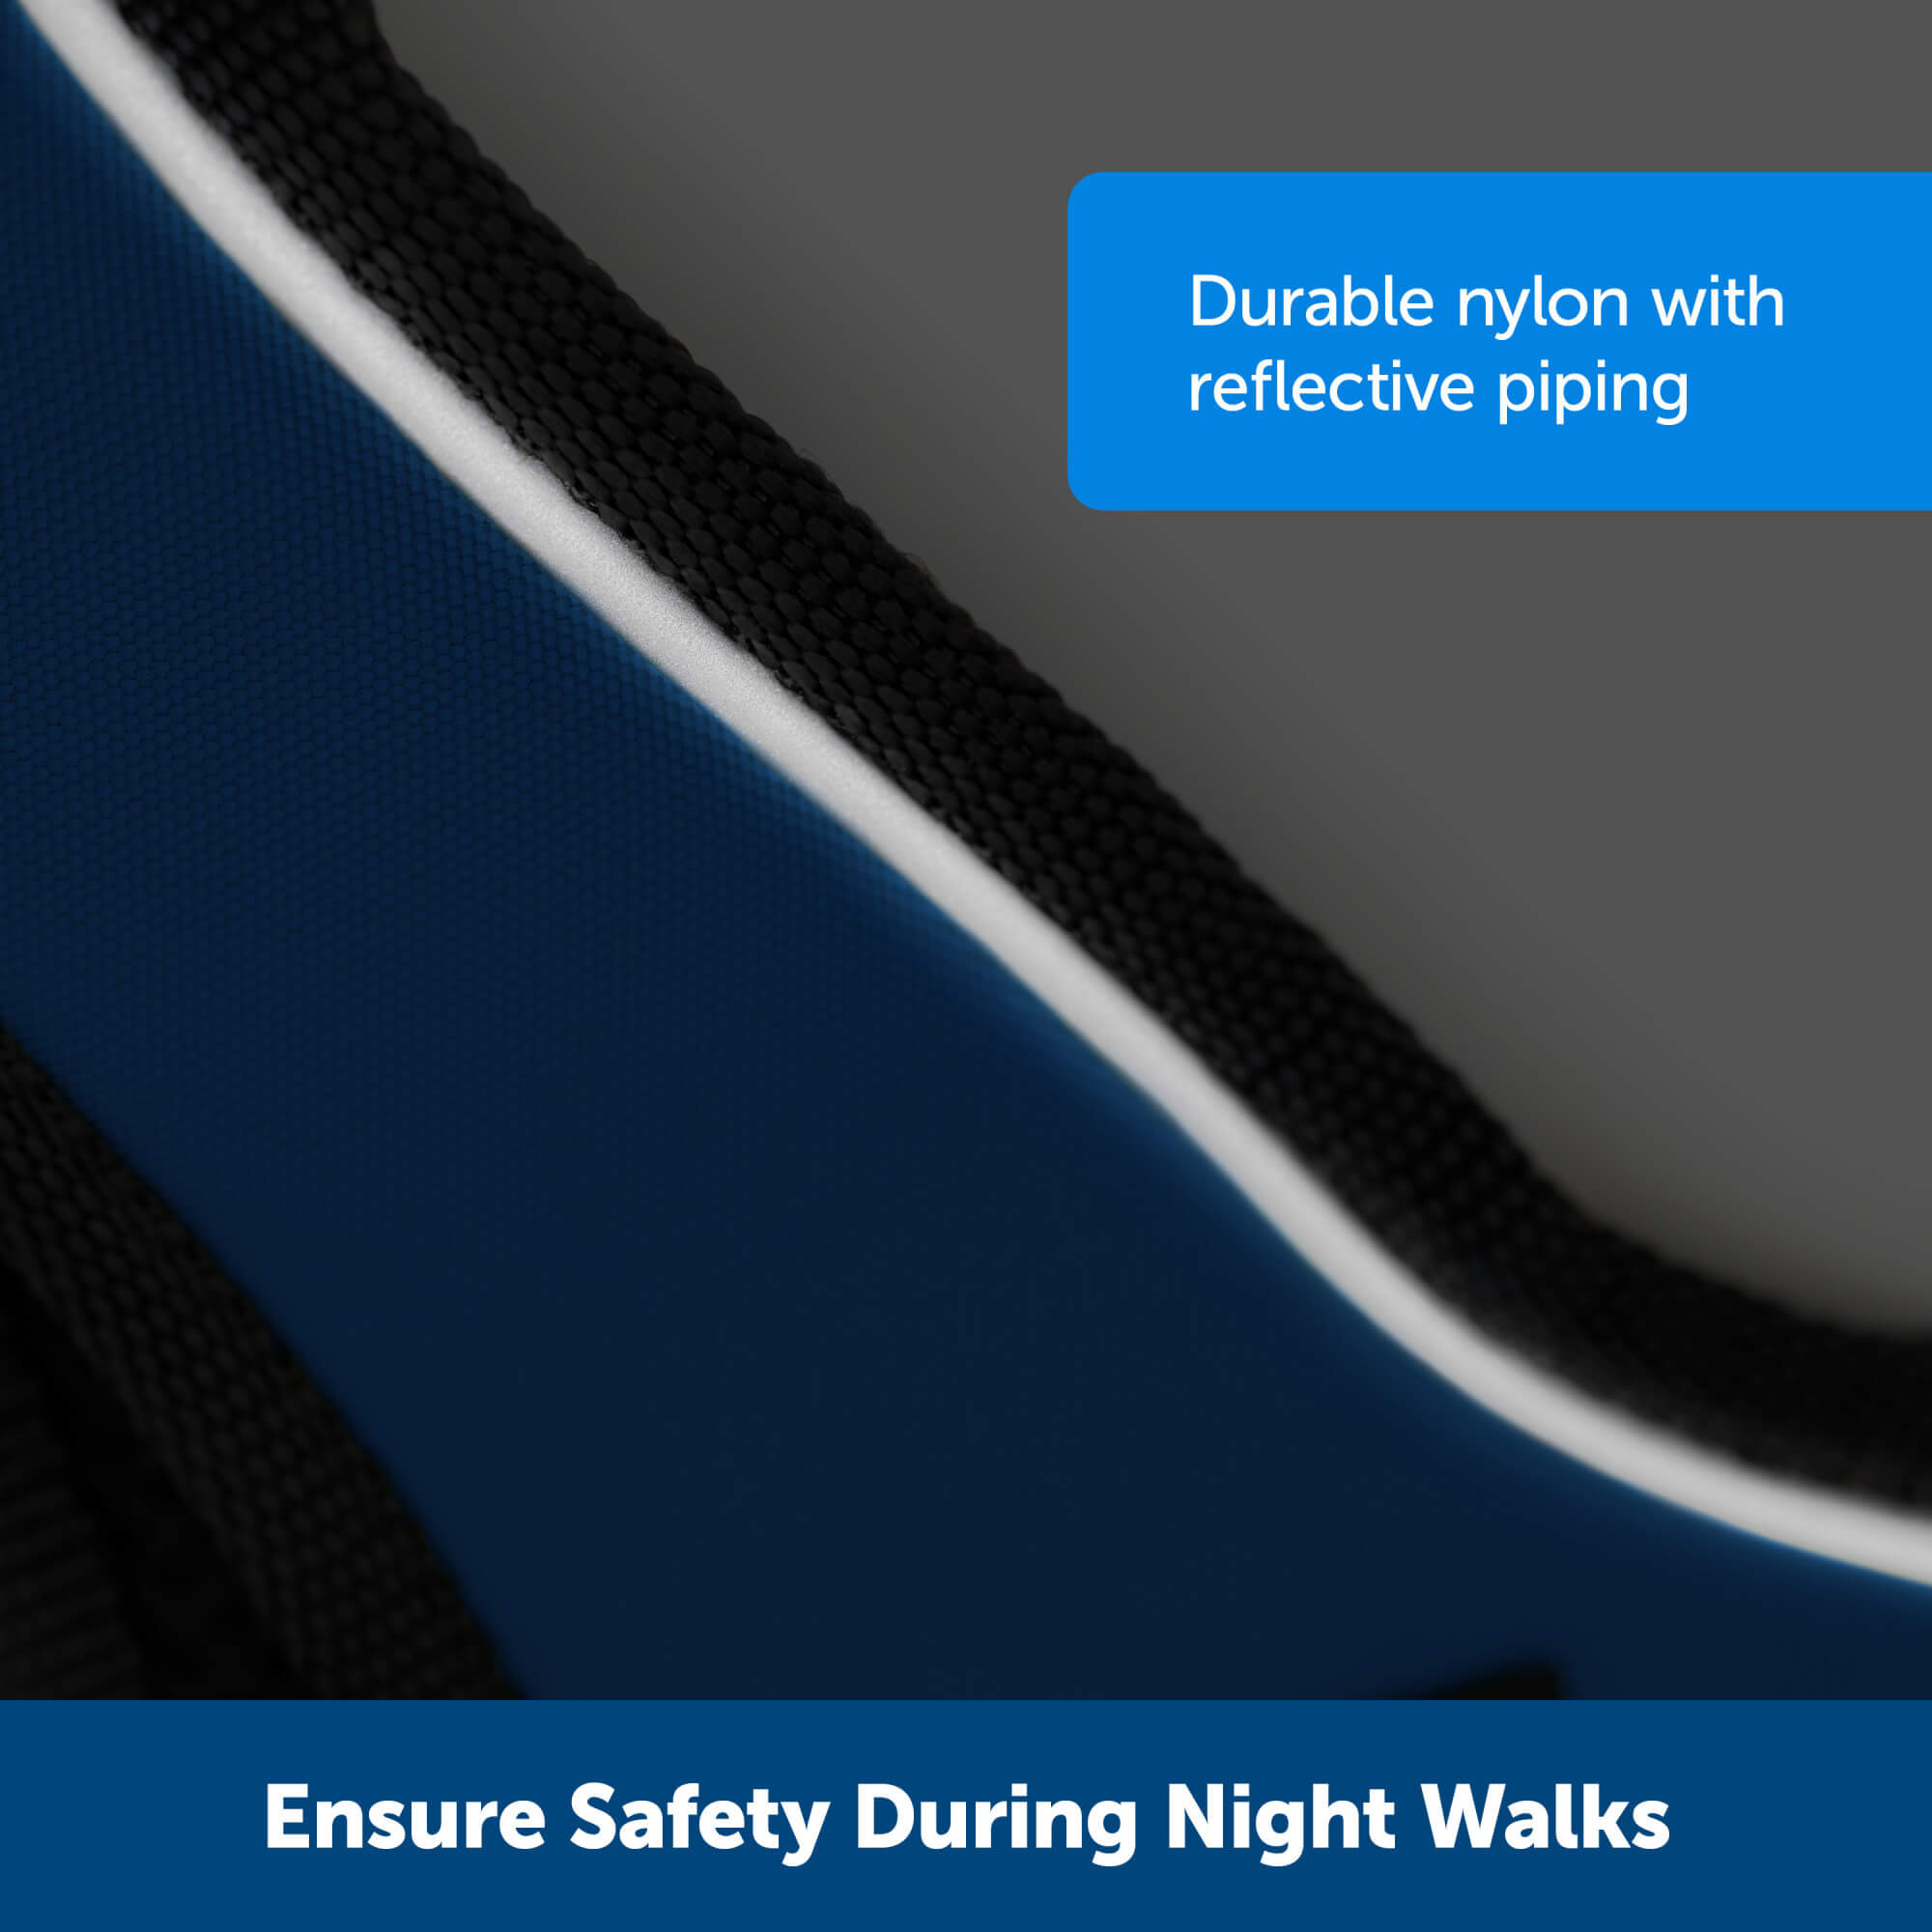 Ensure safety during night walks